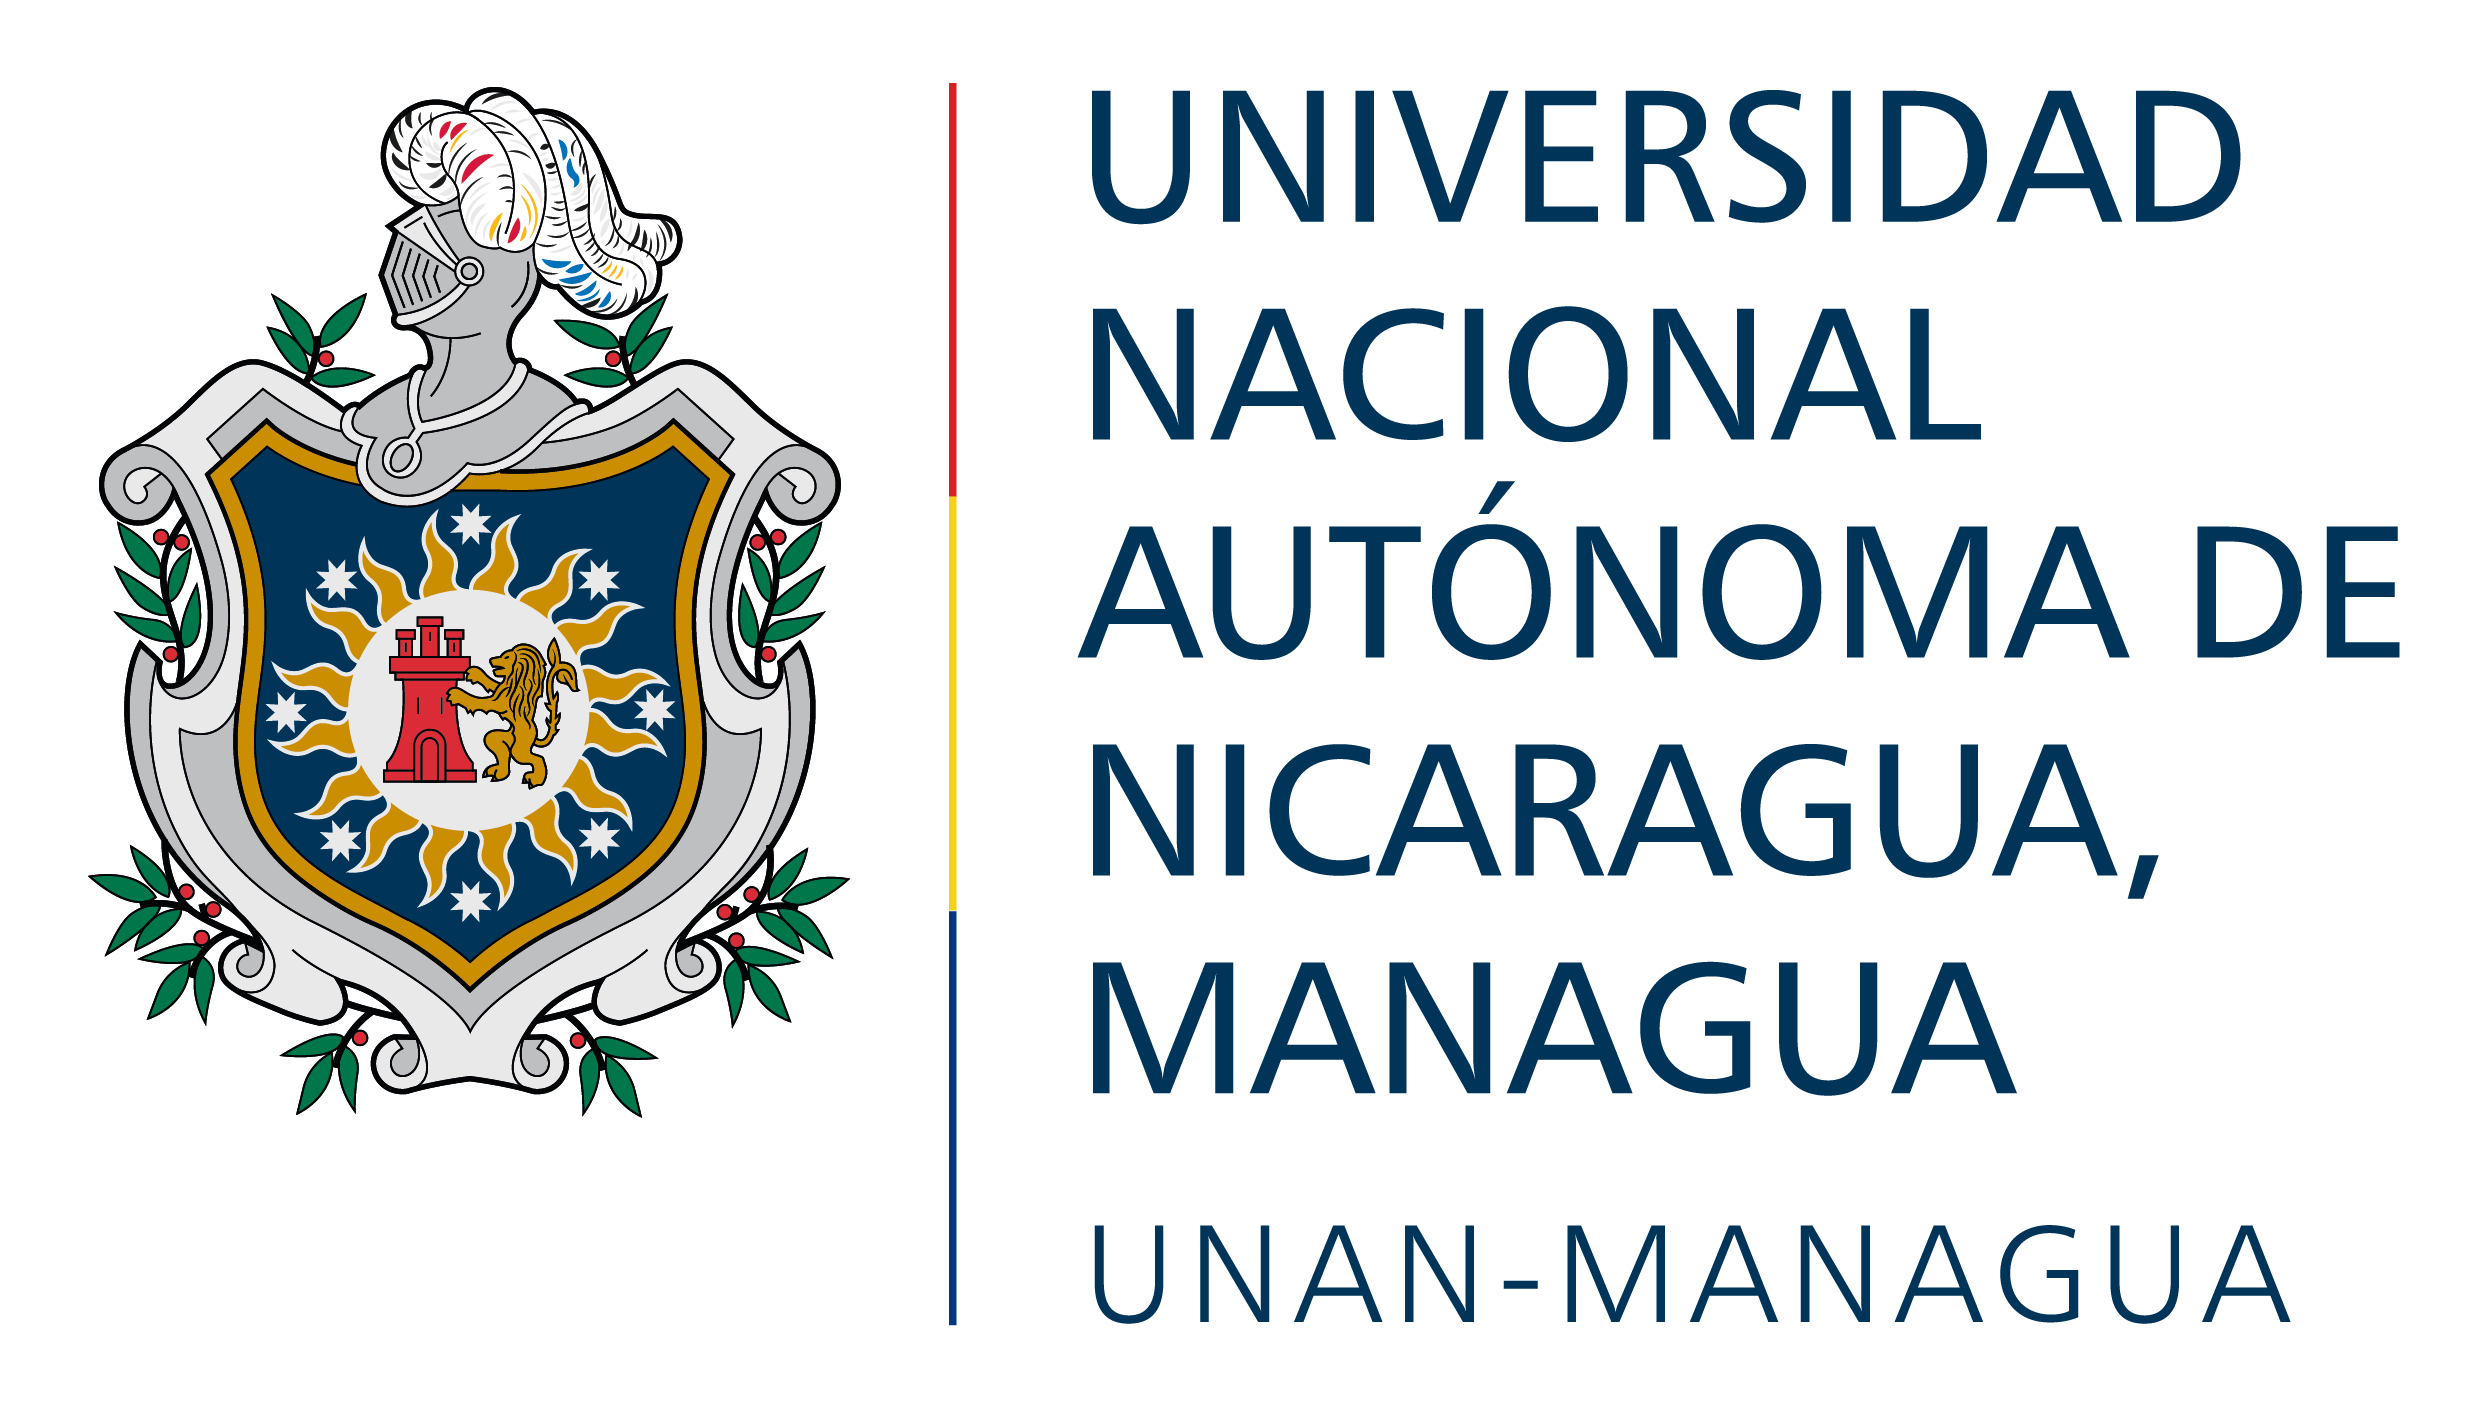 UNAN-MANAGUA